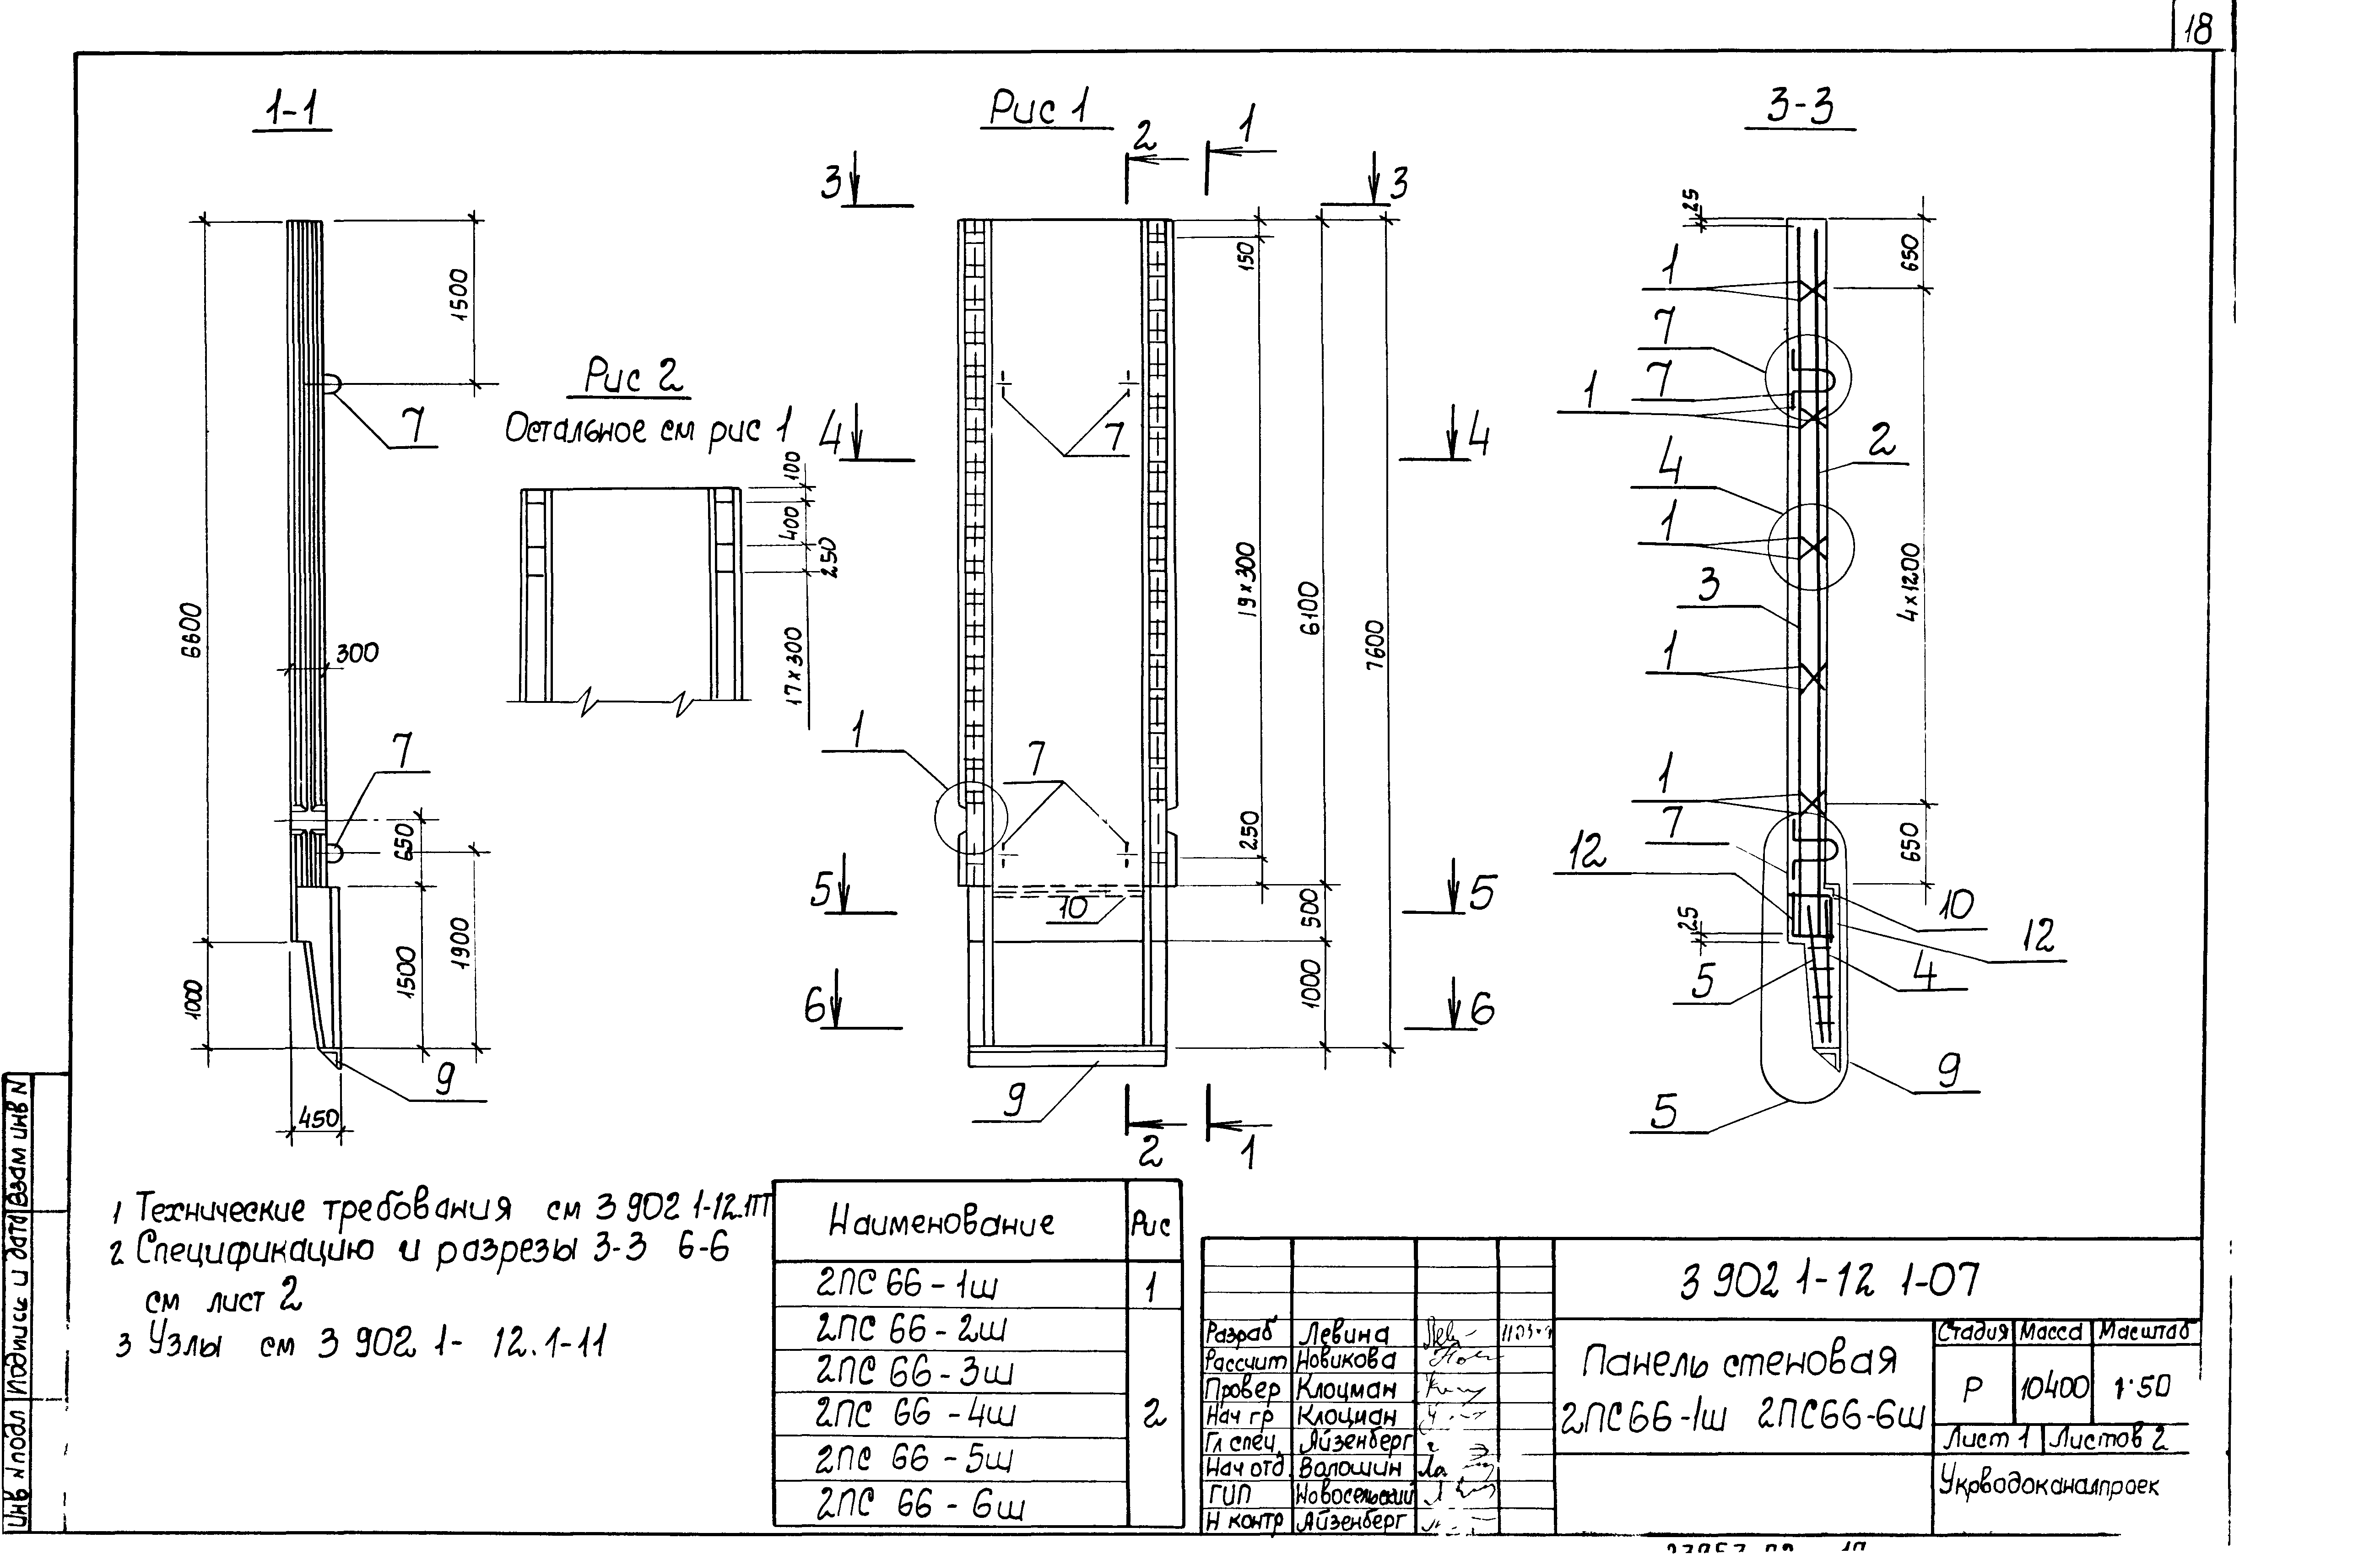 Панель стеновая 2ПС66-3ш Серия 3.902.1-12, вып.1